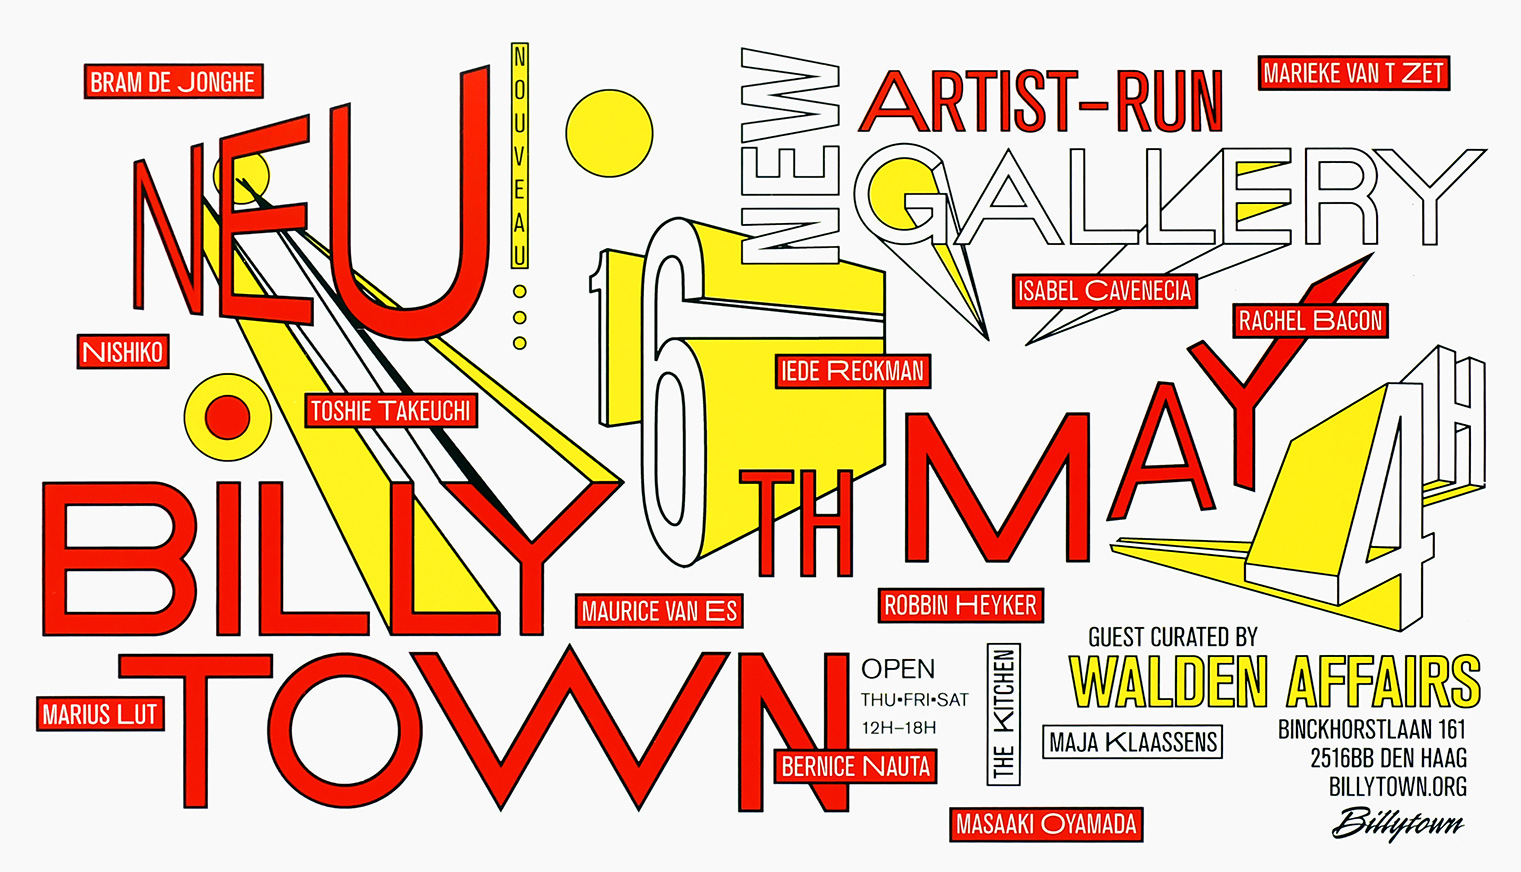 Billytown Artist-Run Gallery